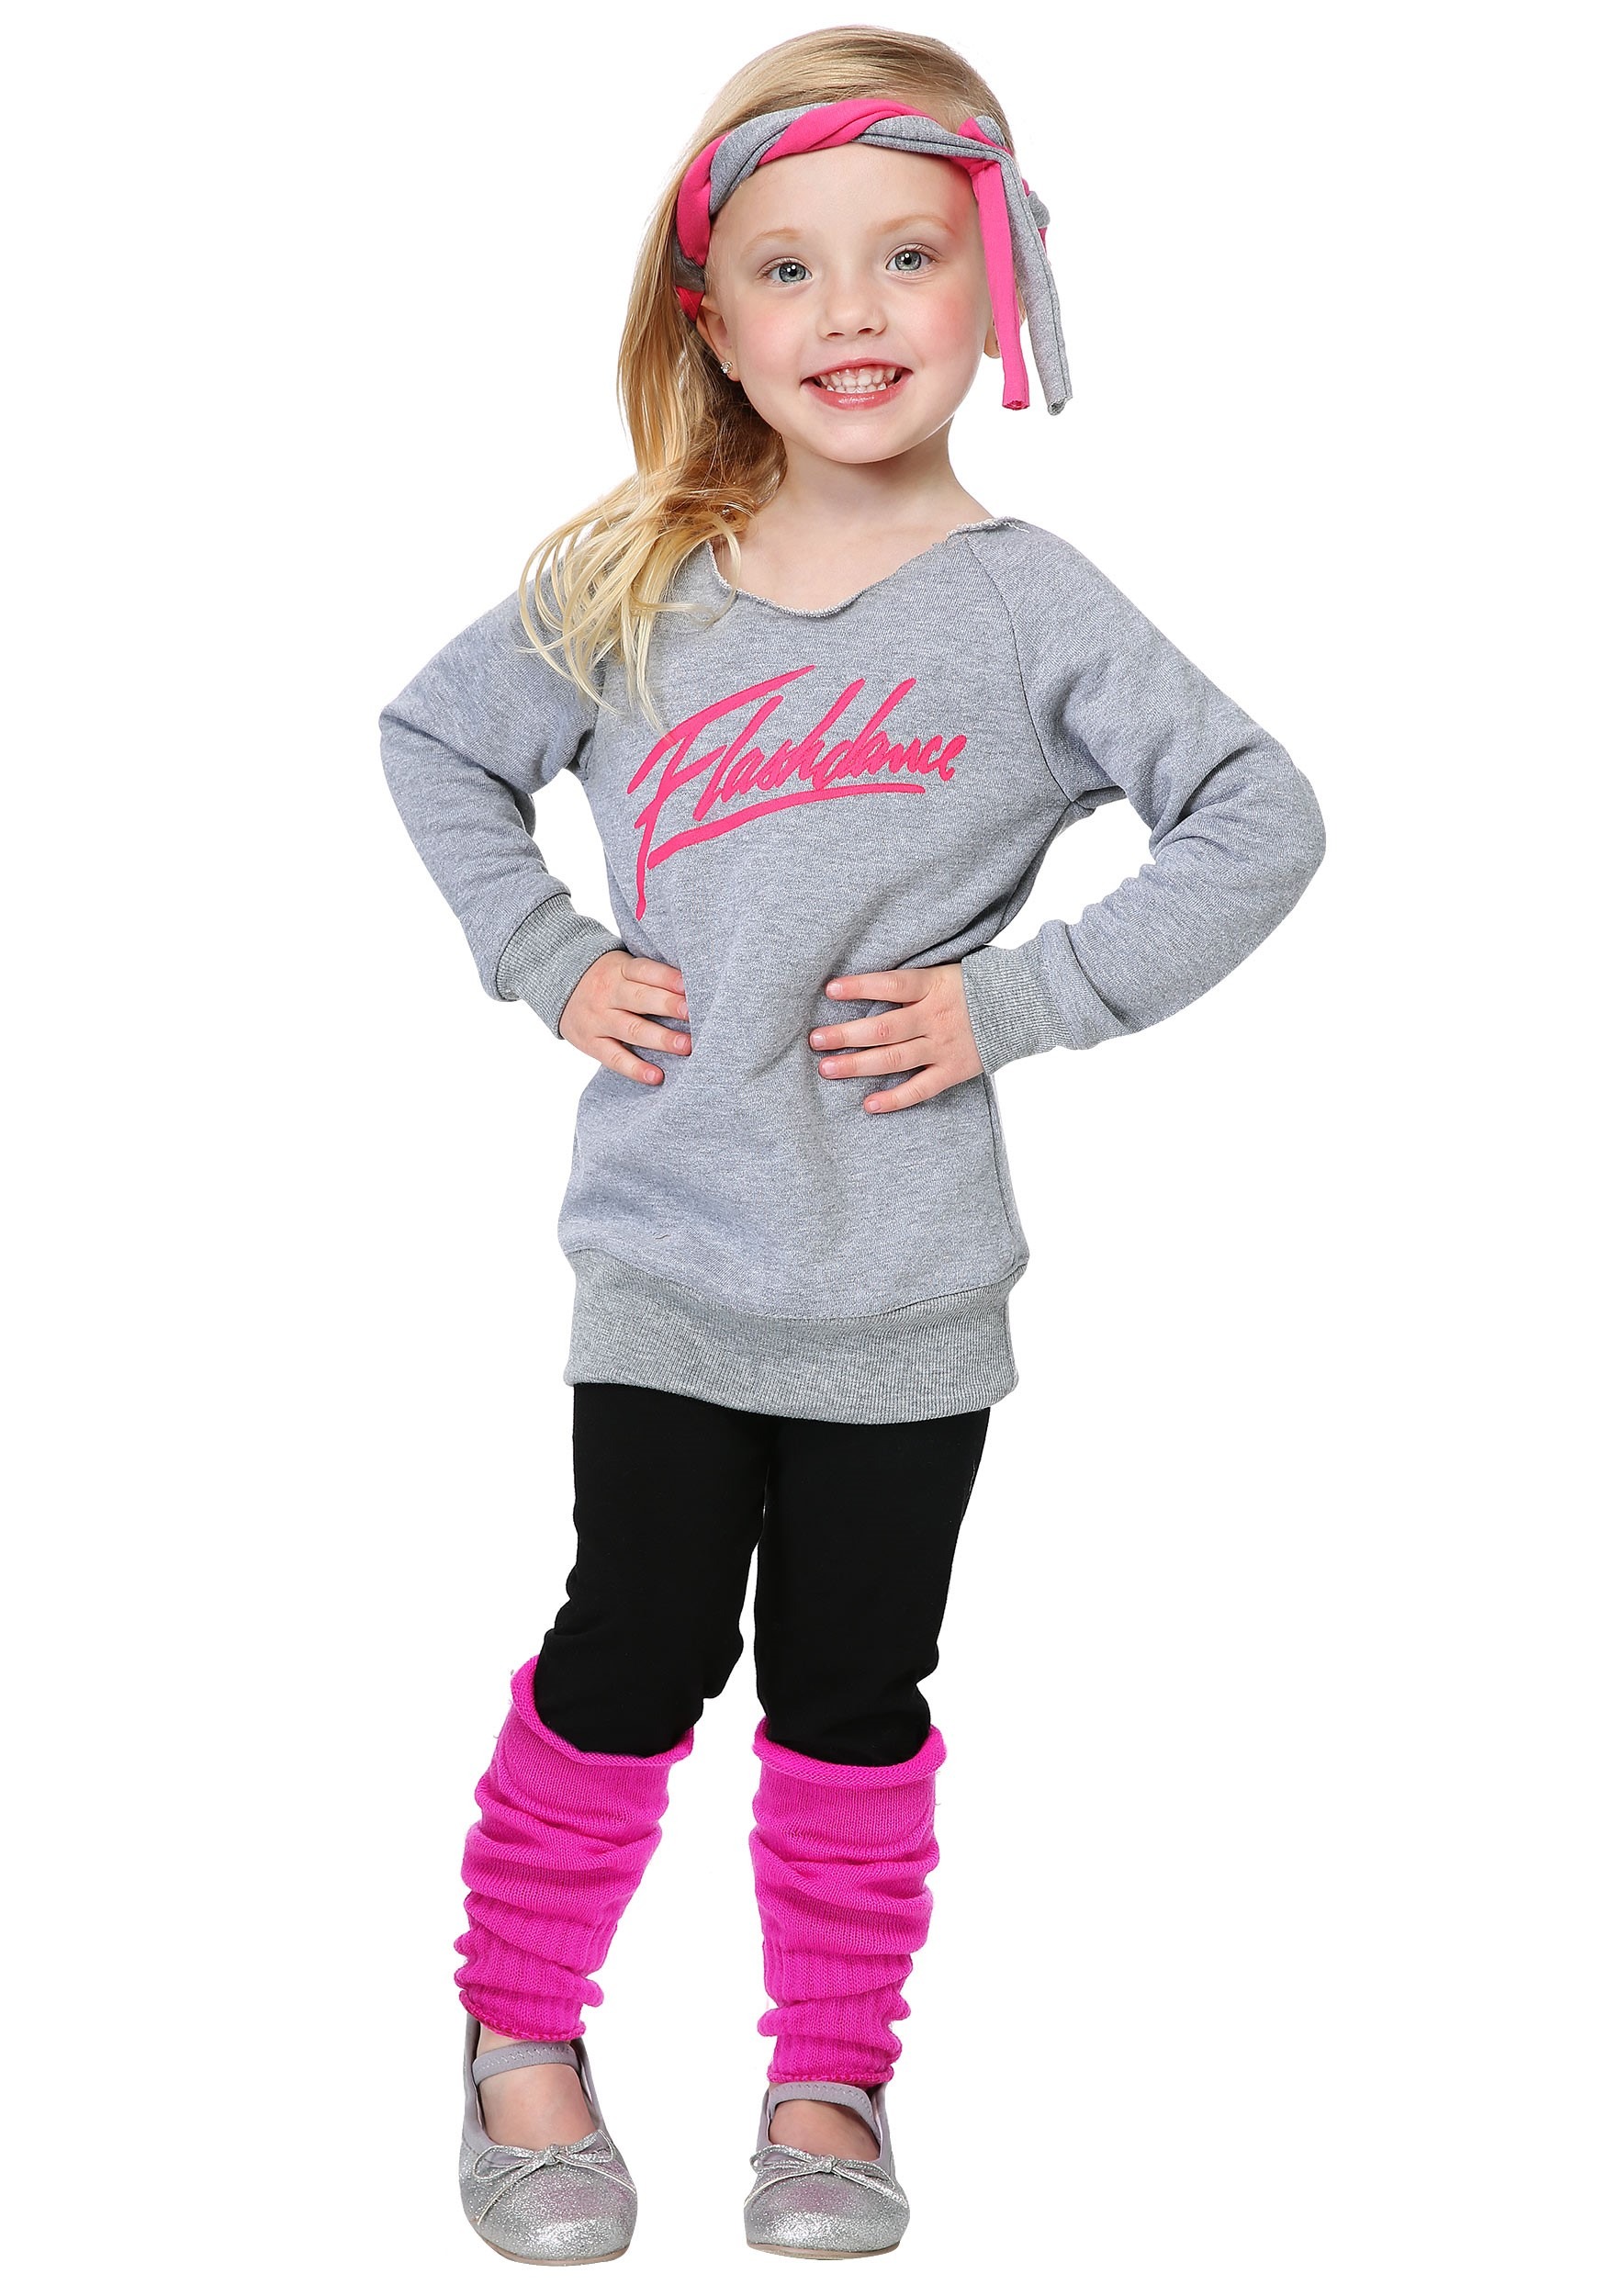 Toddler Flashdance Costume for Girls